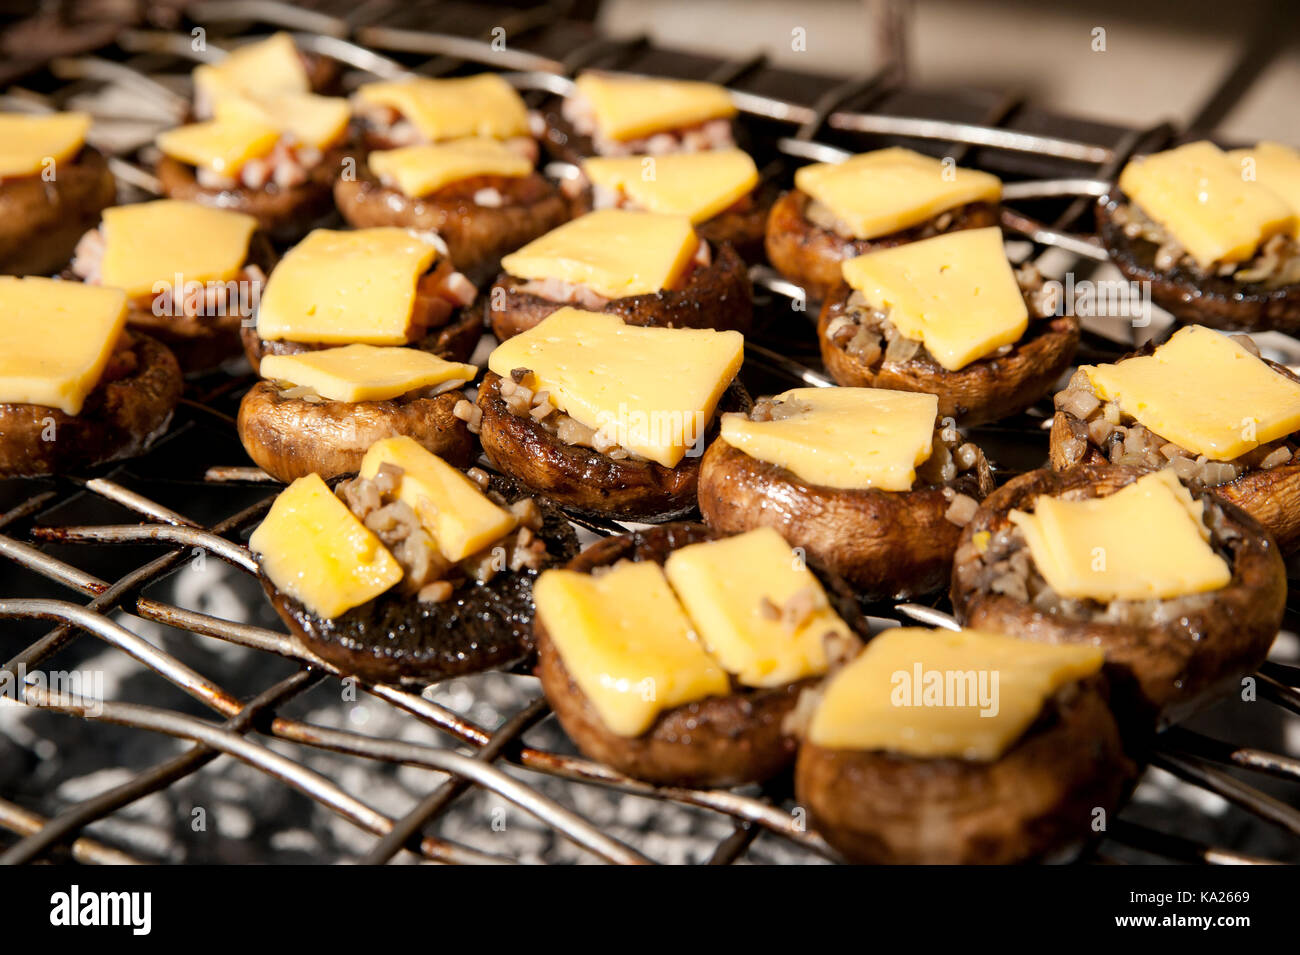 D'un bouton caps mashroom (champignons portobello) avec des tranches de fromage sur un haut, sur une grille de cuisson Banque D'Images